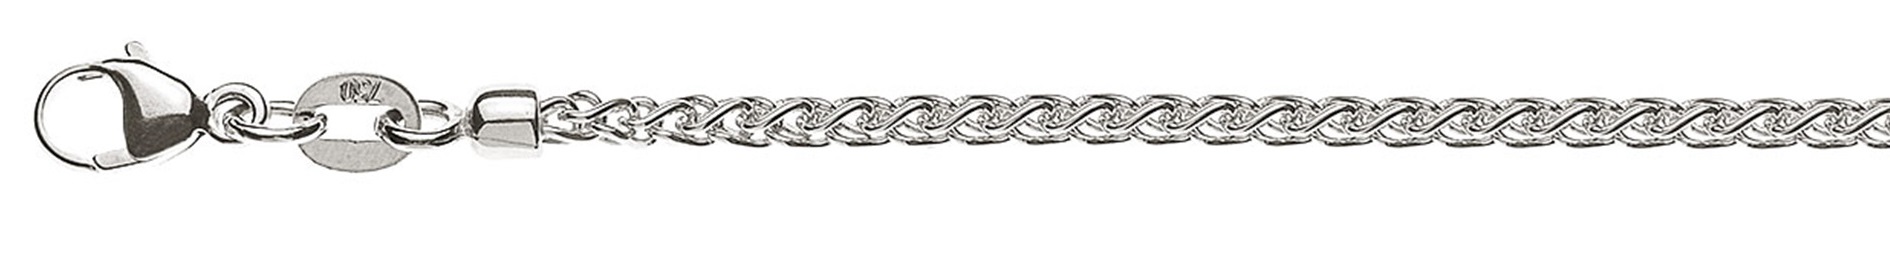 AURONOS Prestige Necklace white gold 18K cable chain 45cm 2.15mm